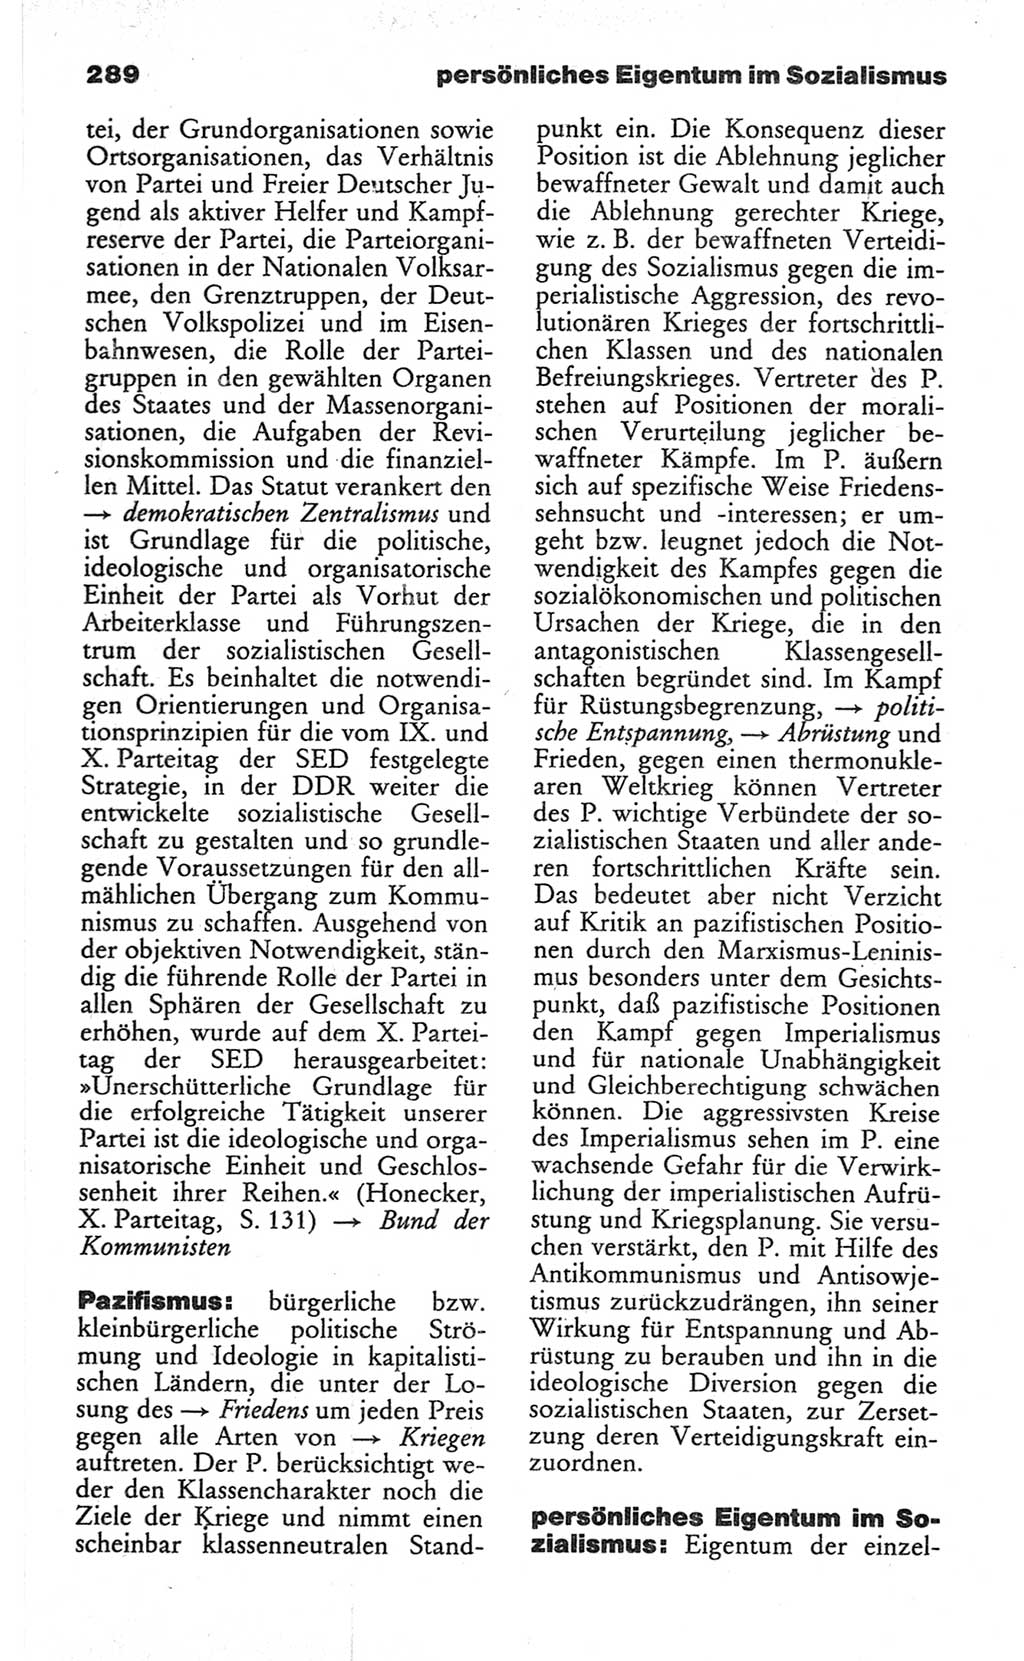 Wörterbuch des wissenschaftlichen Kommunismus [Deutsche Demokratische Republik (DDR)] 1982, Seite 289 (Wb. wiss. Komm. DDR 1982, S. 289)